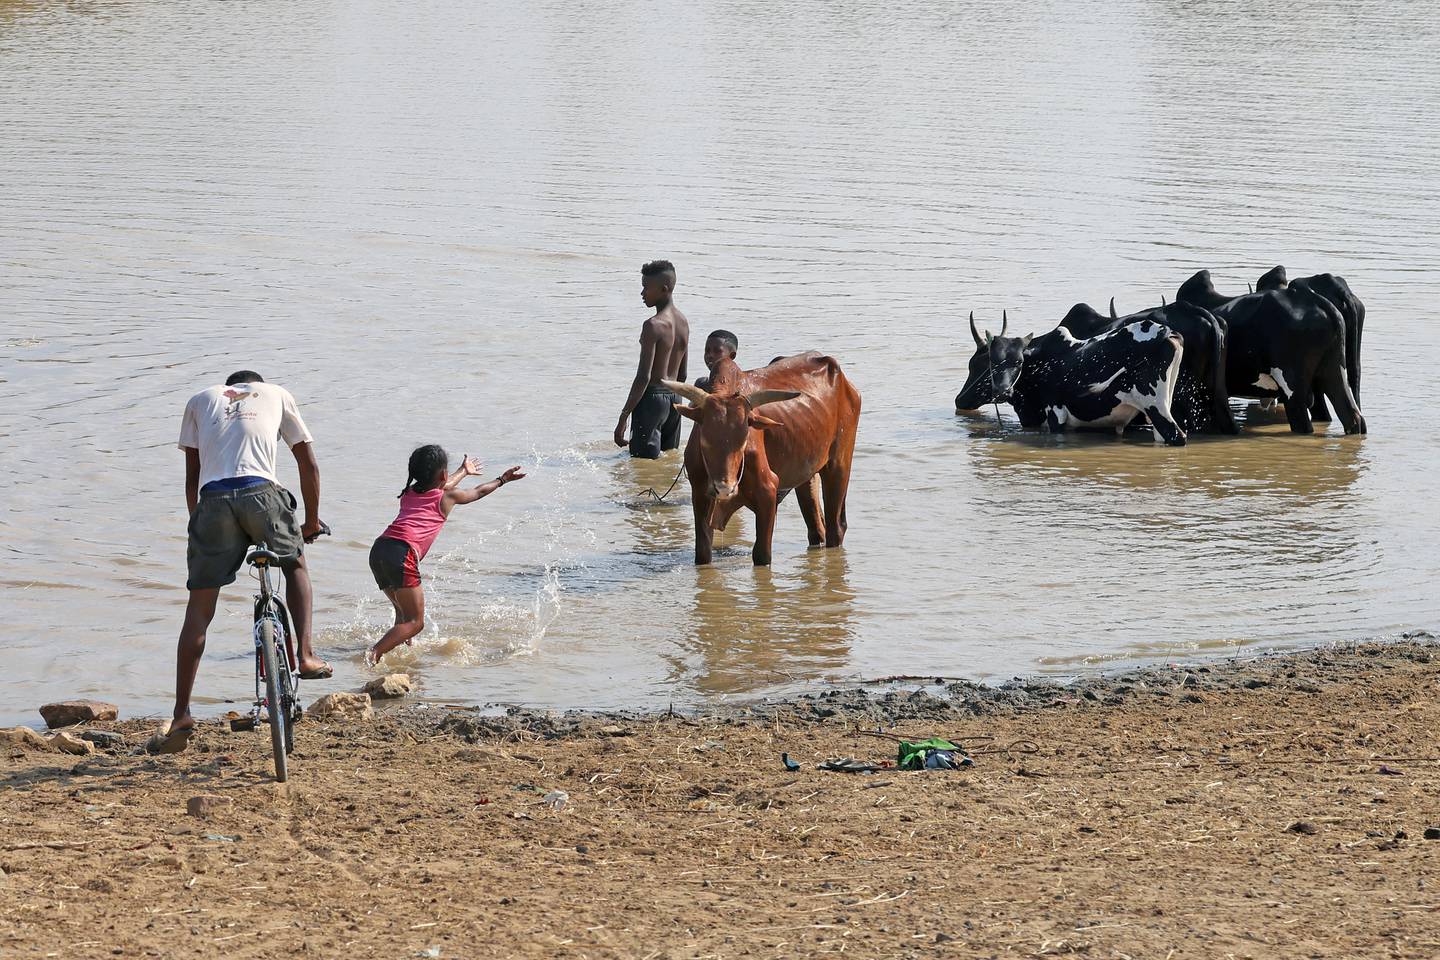 Madagaskar. Relationen mellan oxarna och deras unga skötare är slående. Här sköljer en flicka familjens oxar i floden.